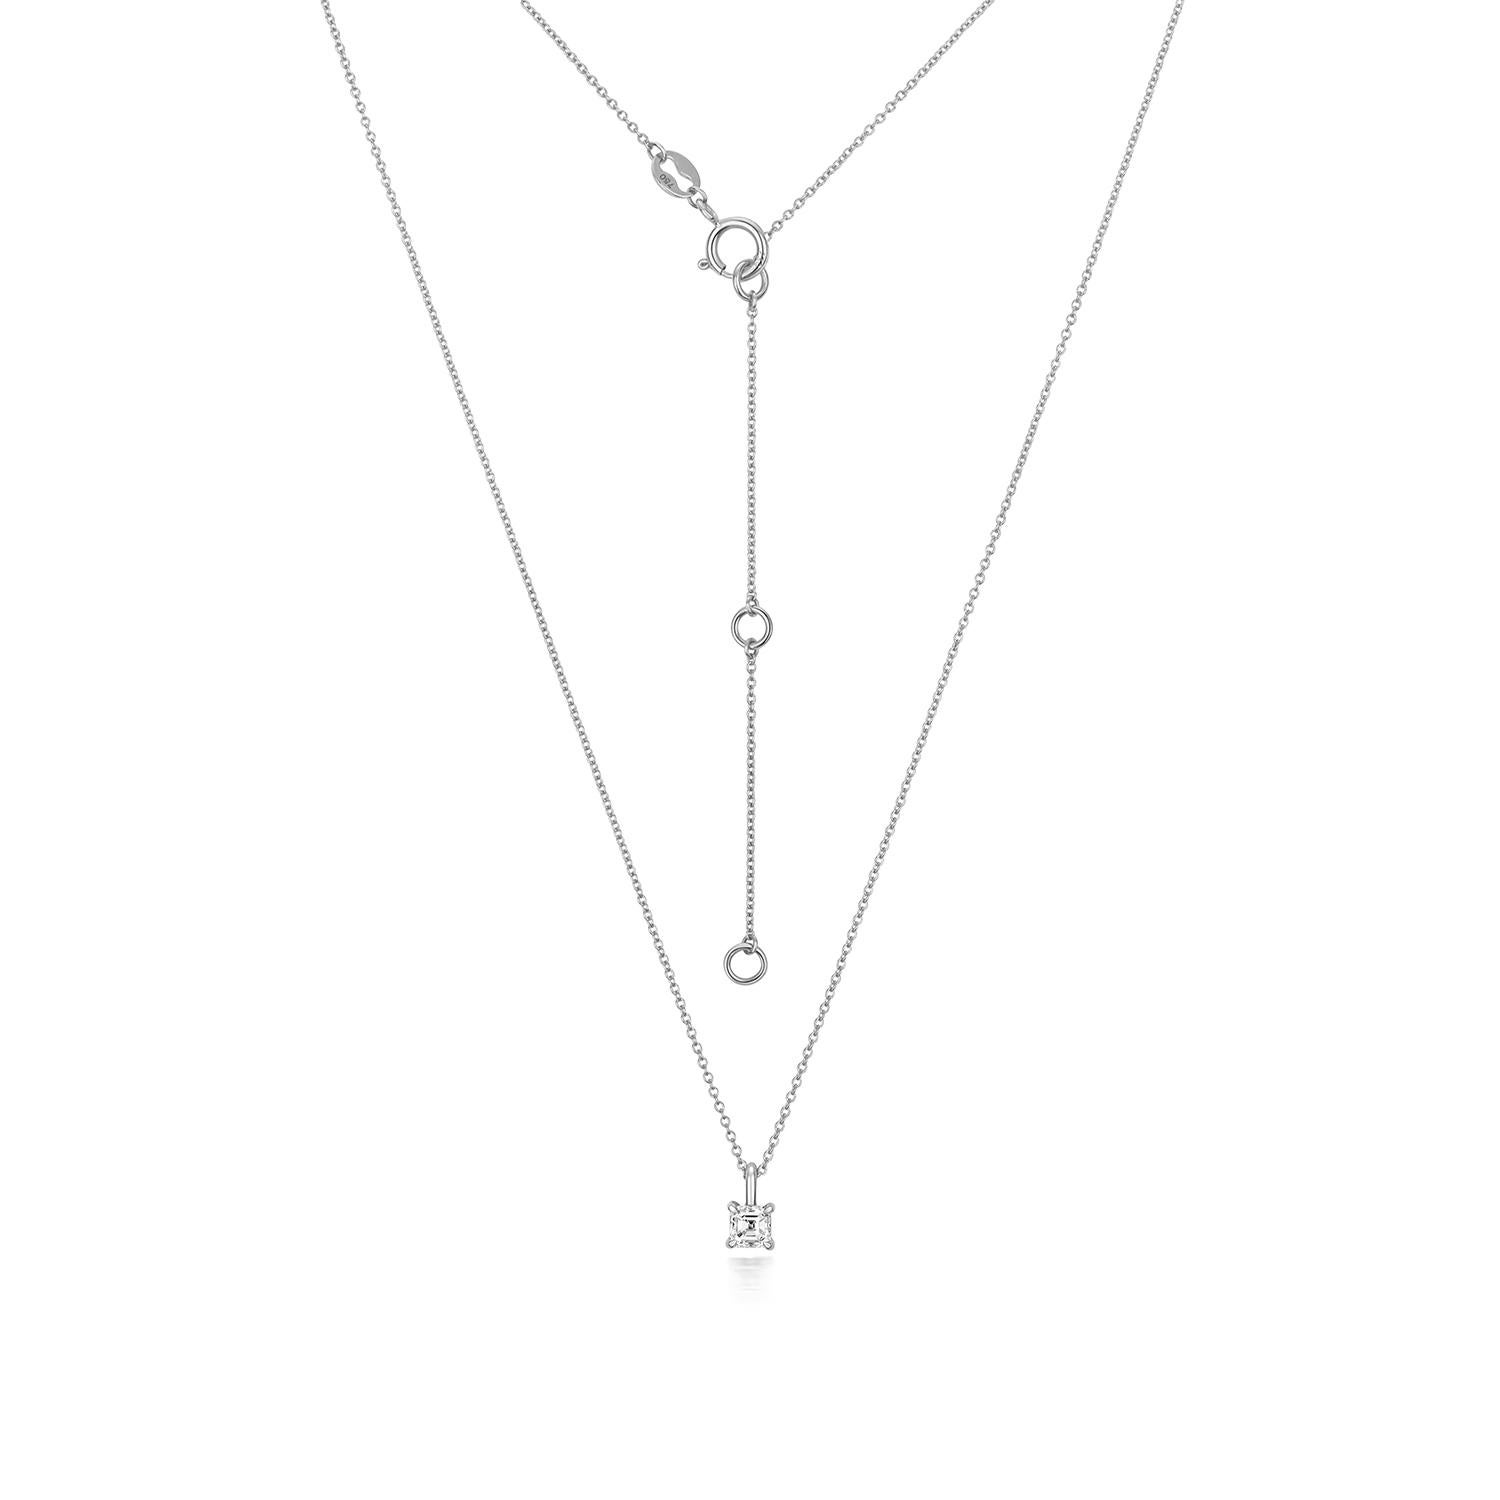 DIAMOND ASSCHER CUT NECKLACE

18CT W/G G VVS 0.19CT

Weight: 1.33g